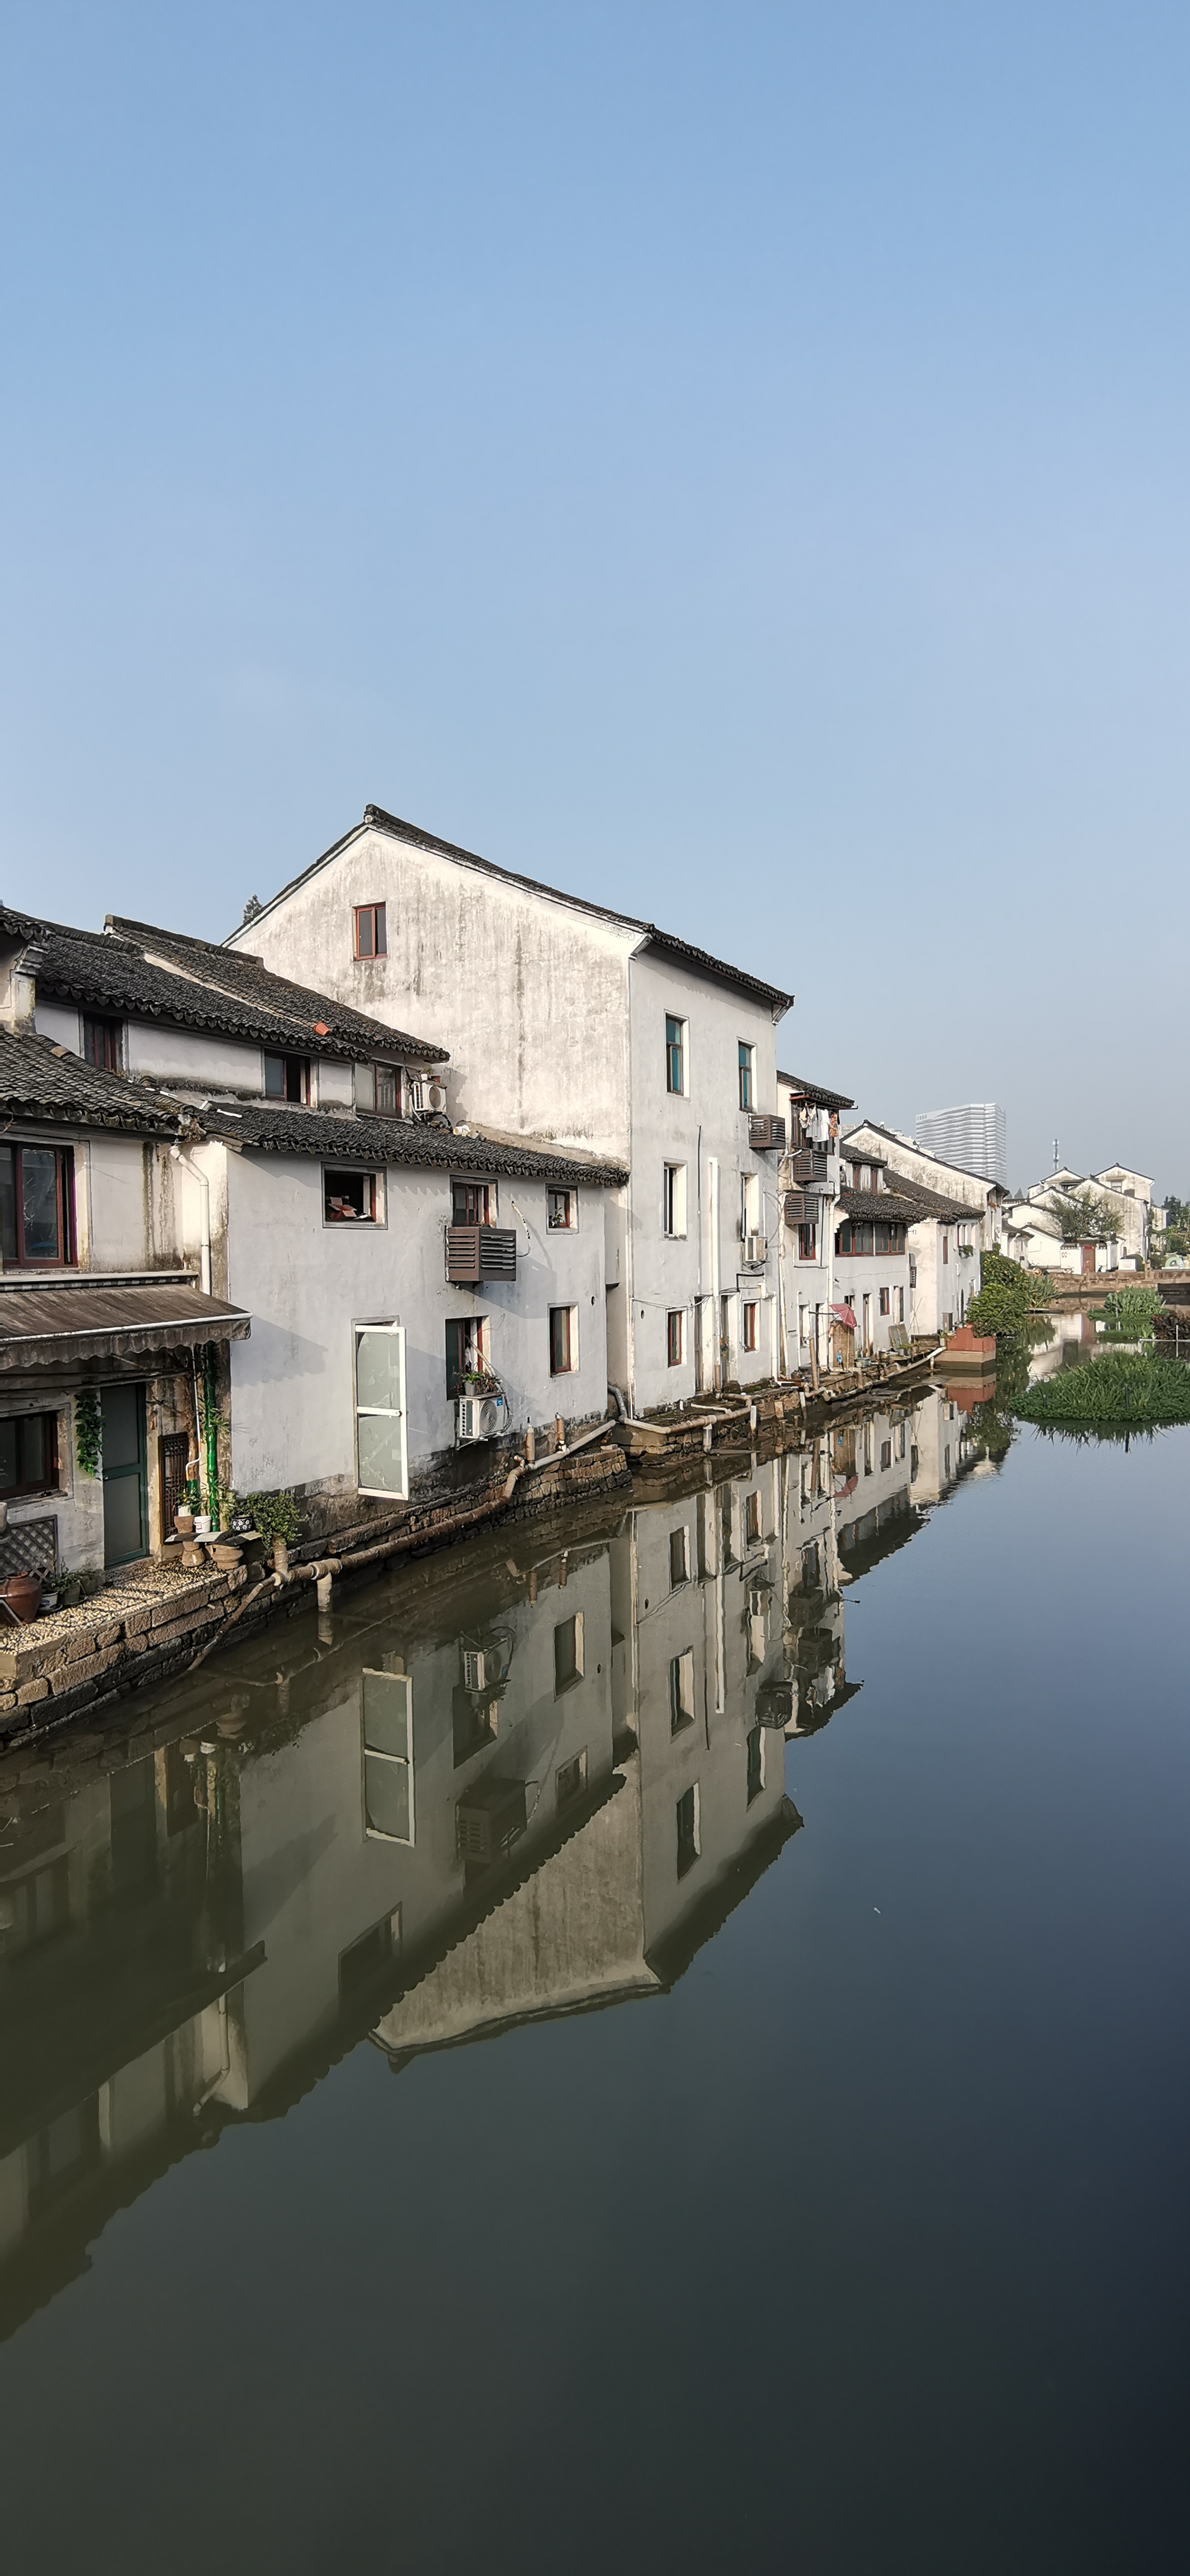 杭州西兴古镇,见证大运河千年的繁荣与兴衰,至今仍充满人间烟火气